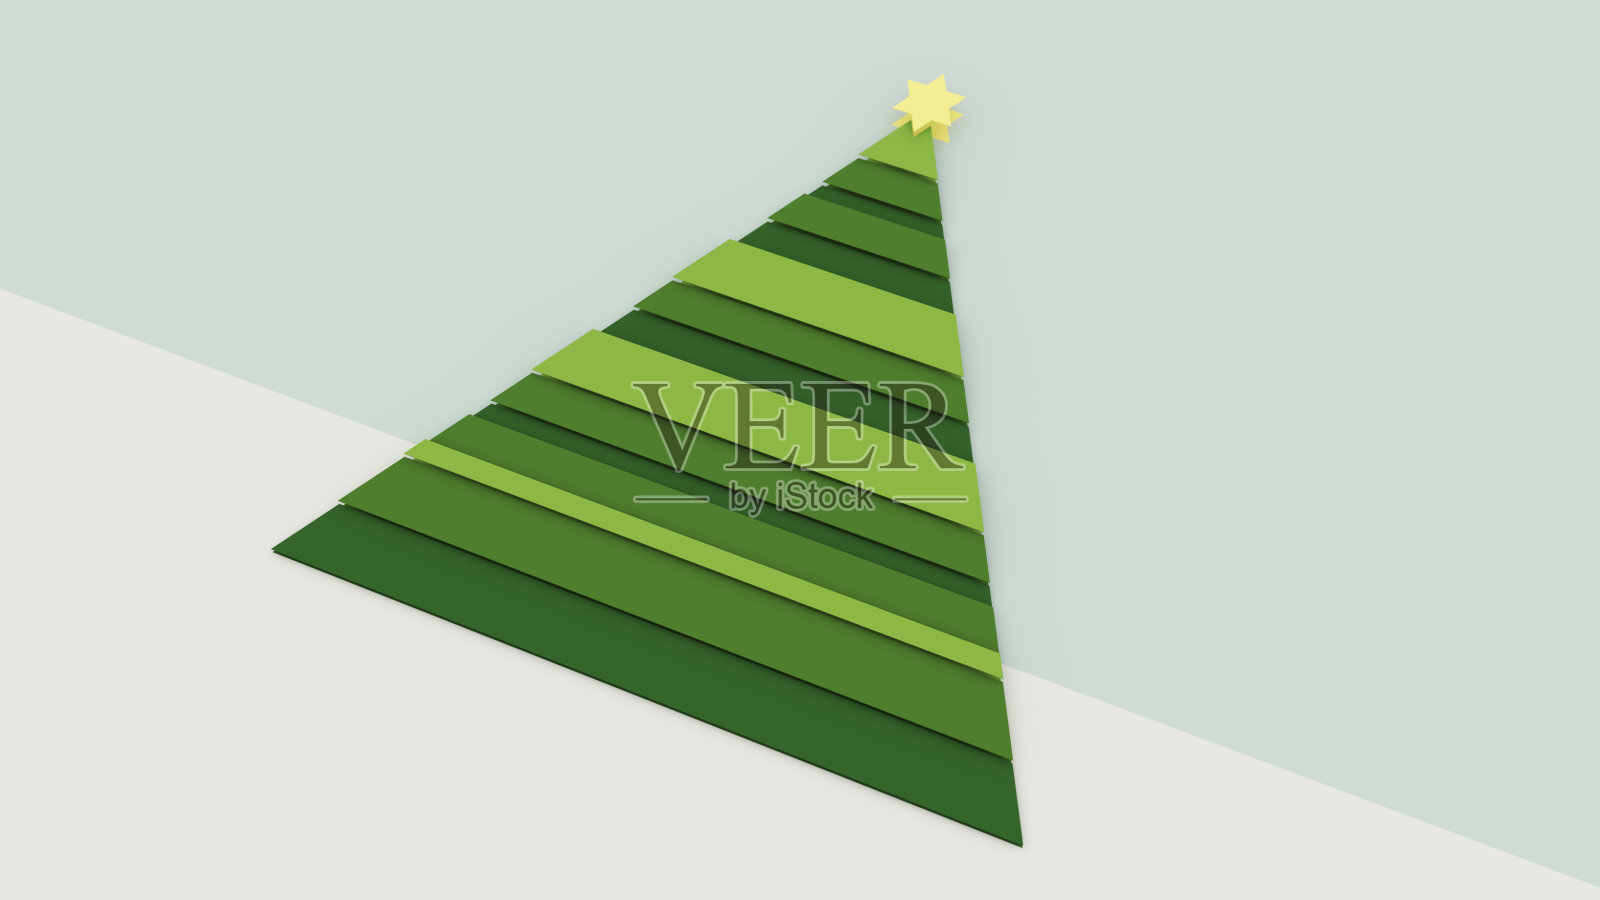 抽象圣诞树与伯利恒之星符号制成的绿色三角形与粉彩蓝色灰色的天空和冬季雪节日象征照片摄影图片